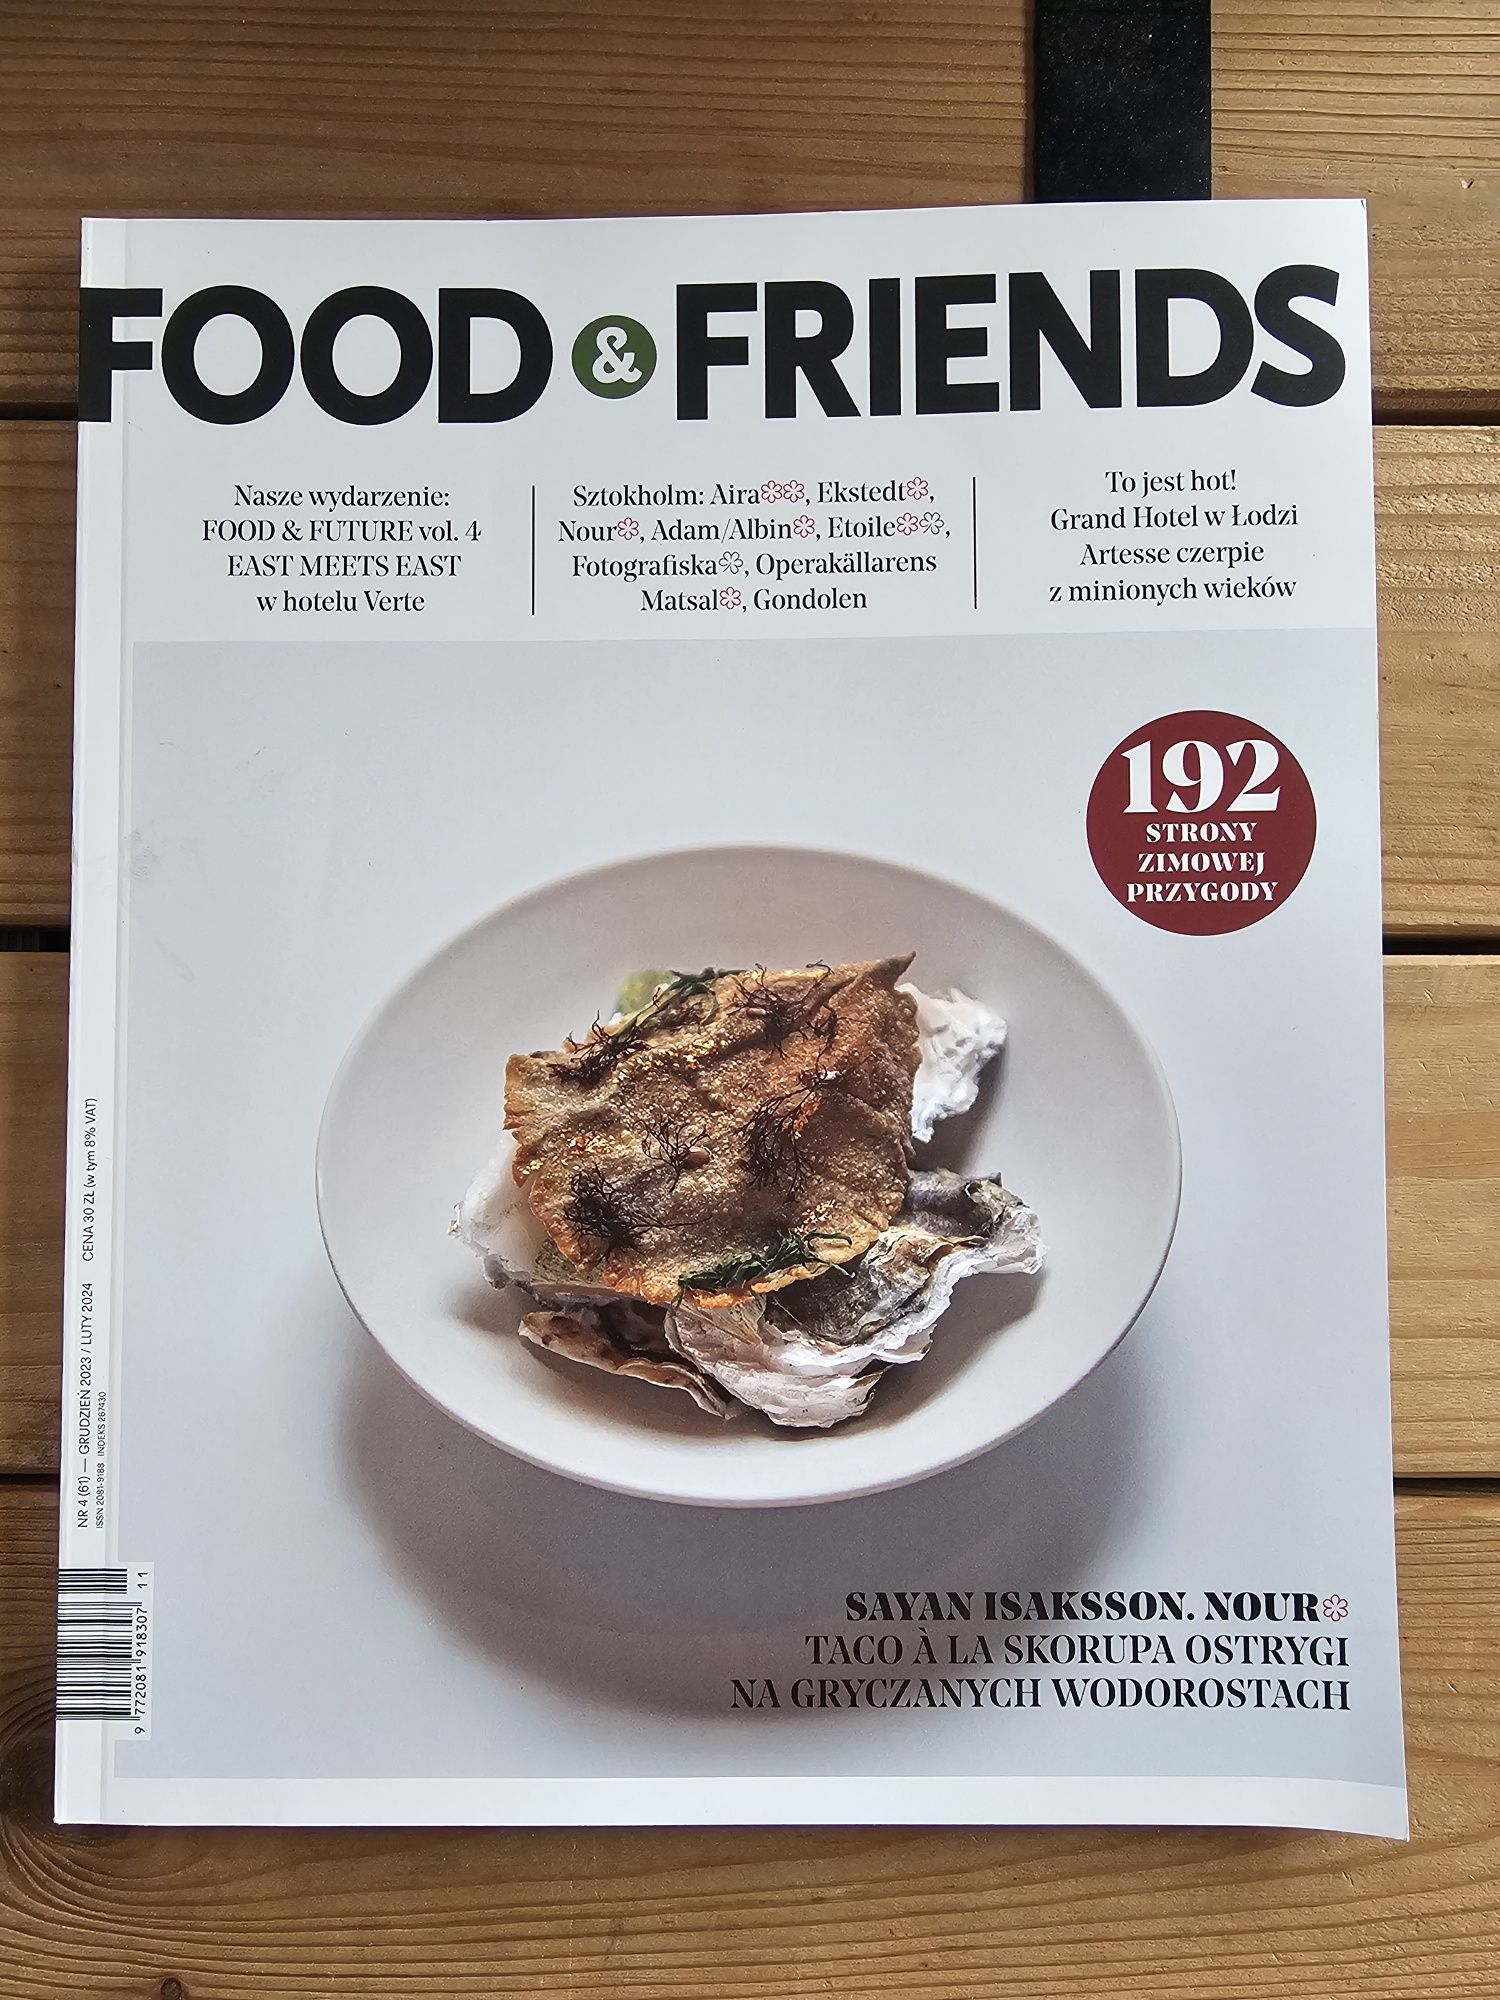 Food & friends - magazyn